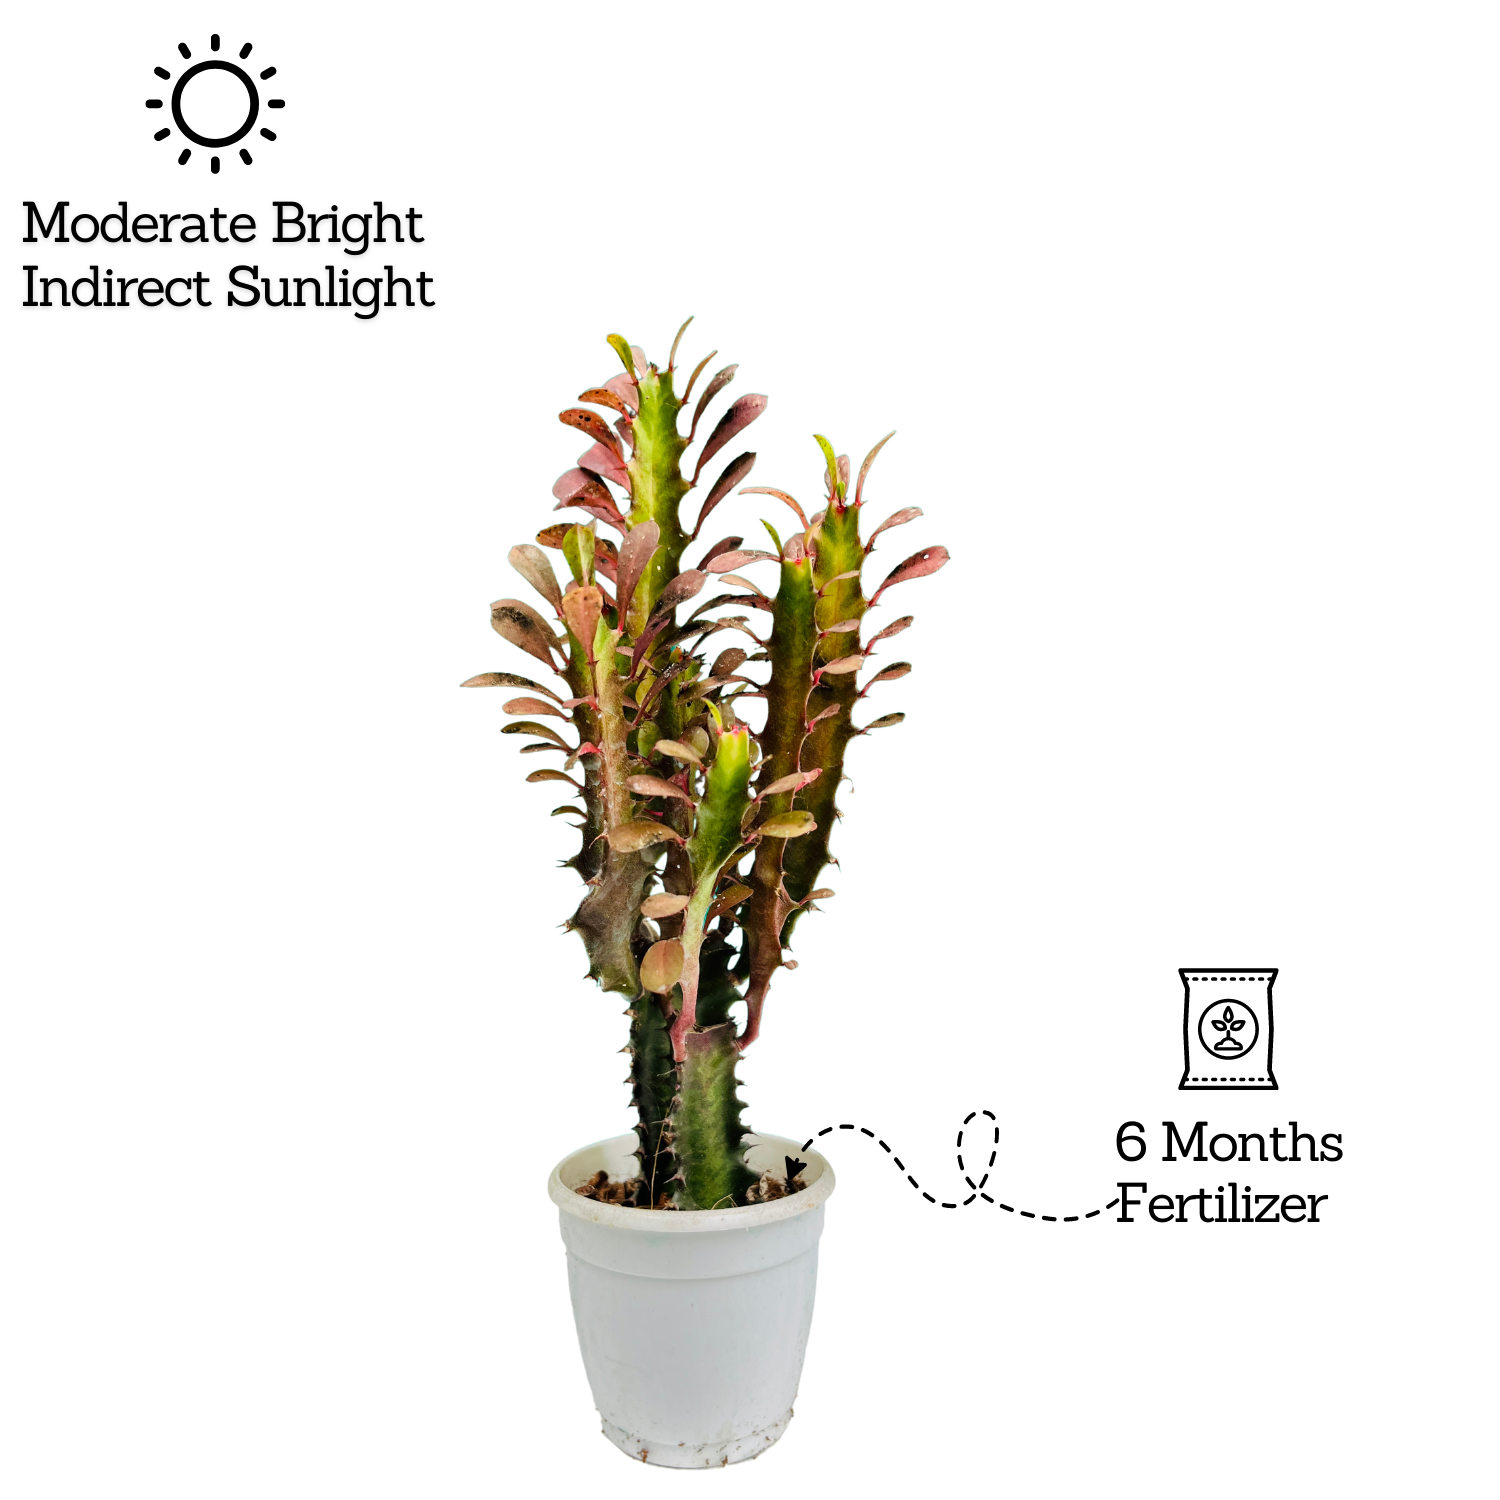 Euphorbia Trigona Red- Live Plant (Home & Garden)